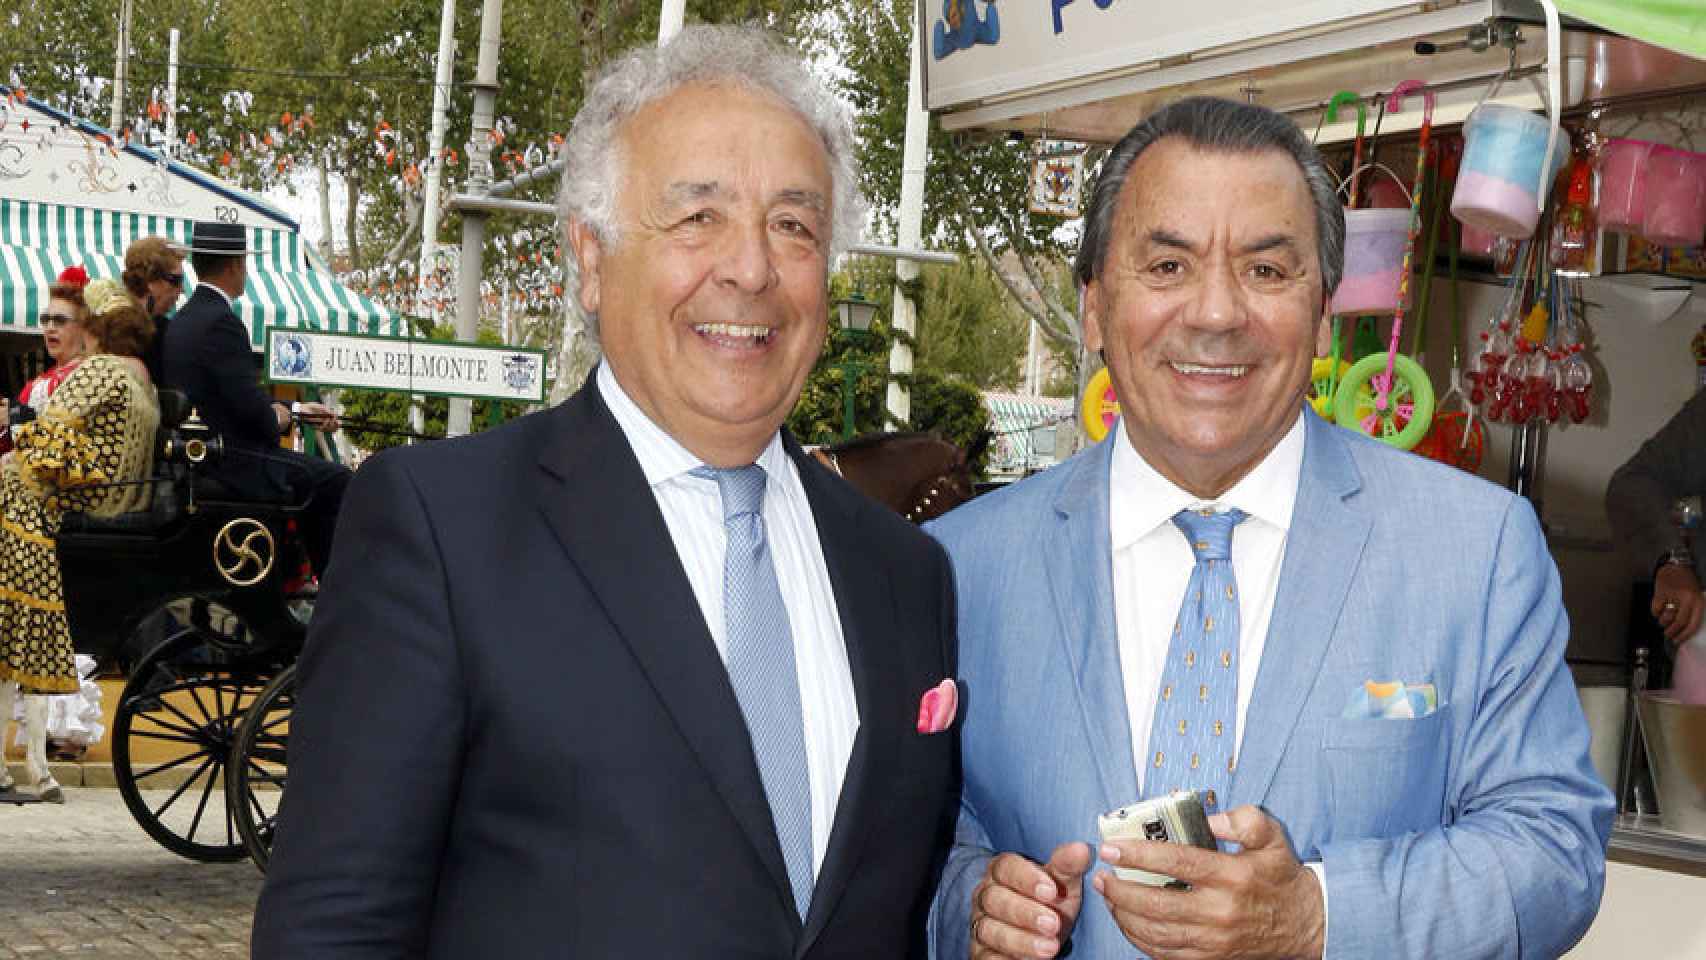 Los del Río en la Feria de abril de 2016: Antonio a la derecha y Rafael a la izquierda.